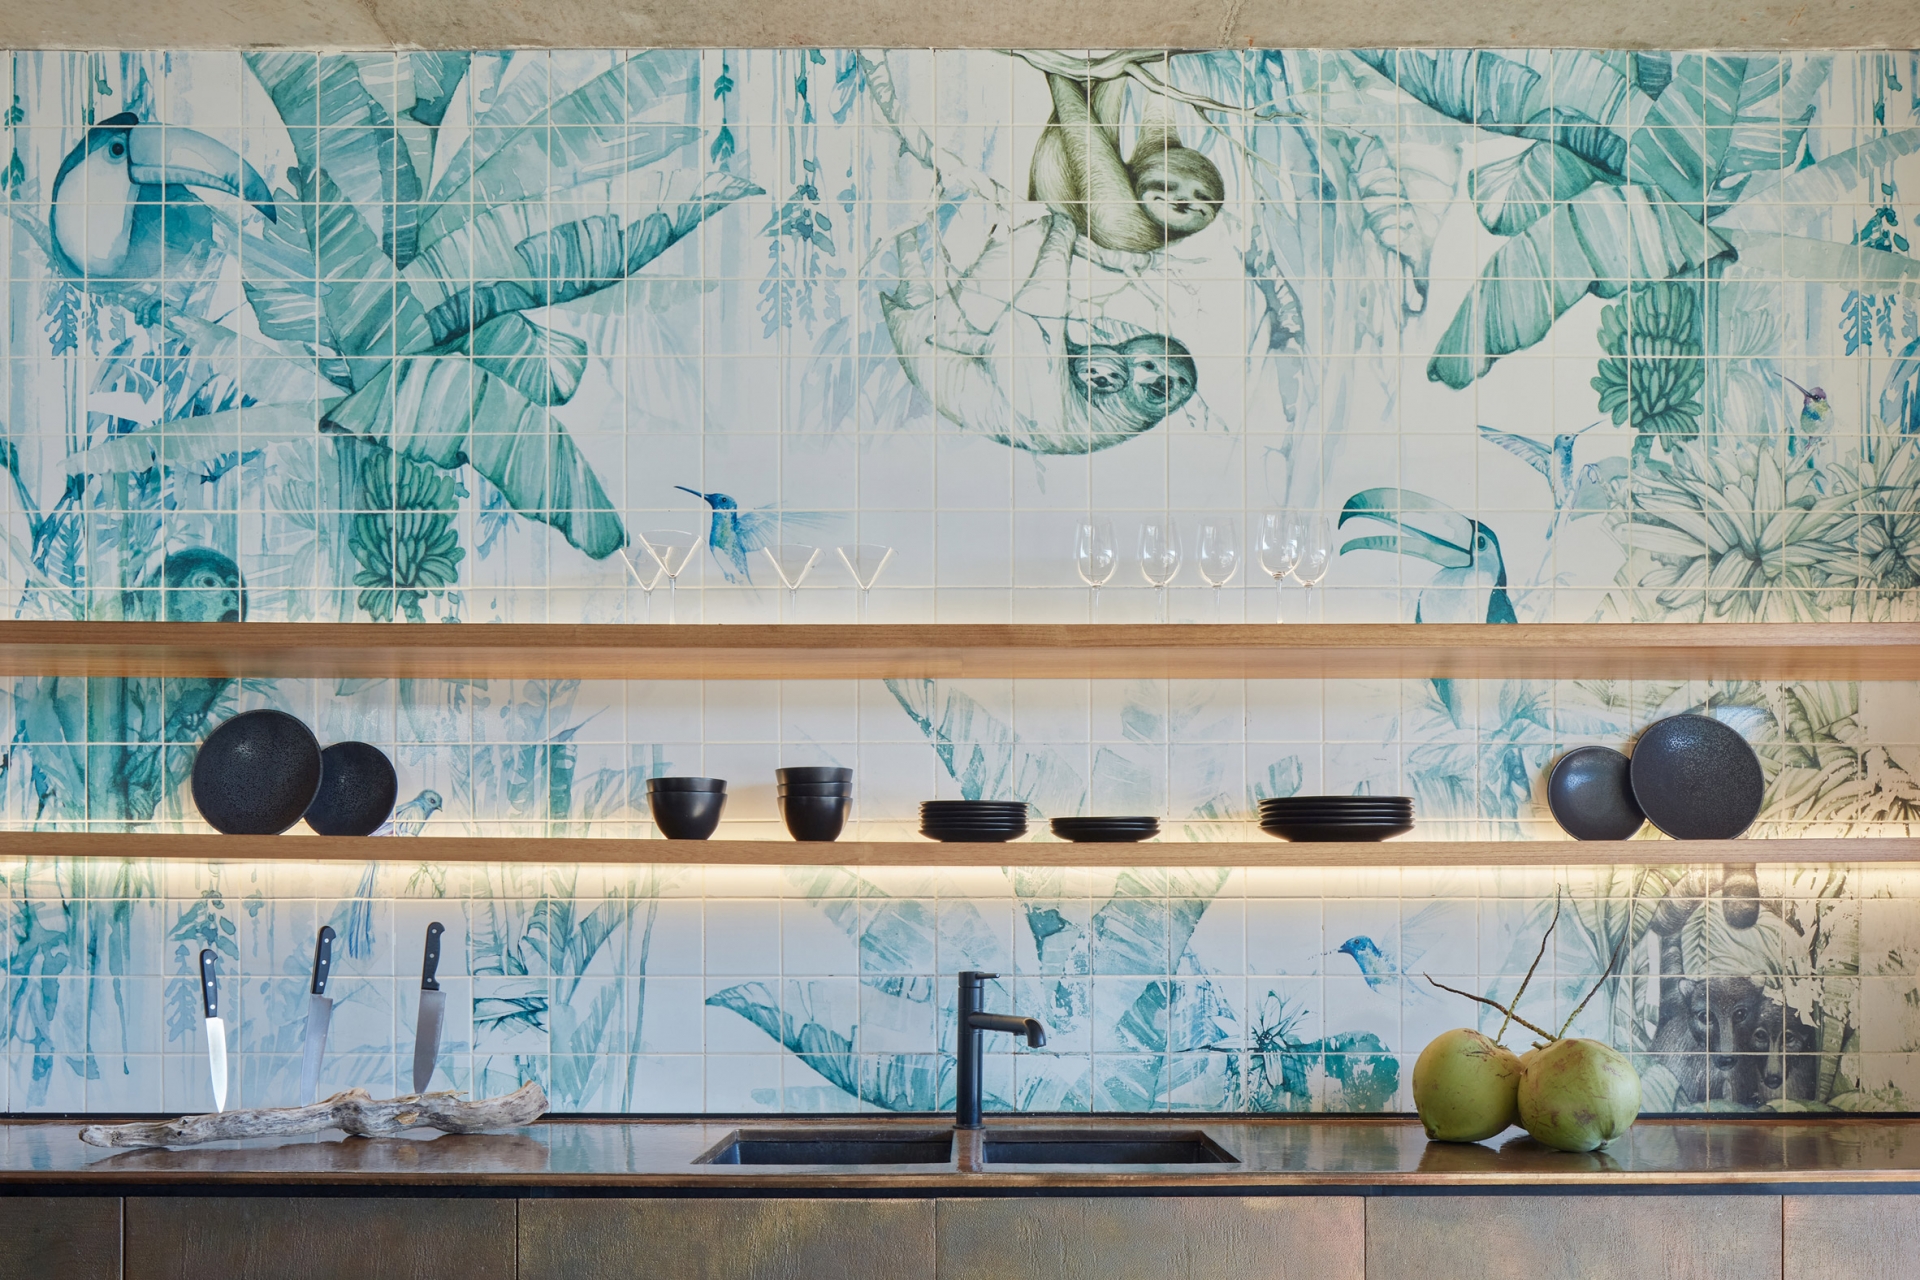 Tường gạch ở khu vực phòng bếp màu xanh thể hiện phong cảnh rừng rậm.